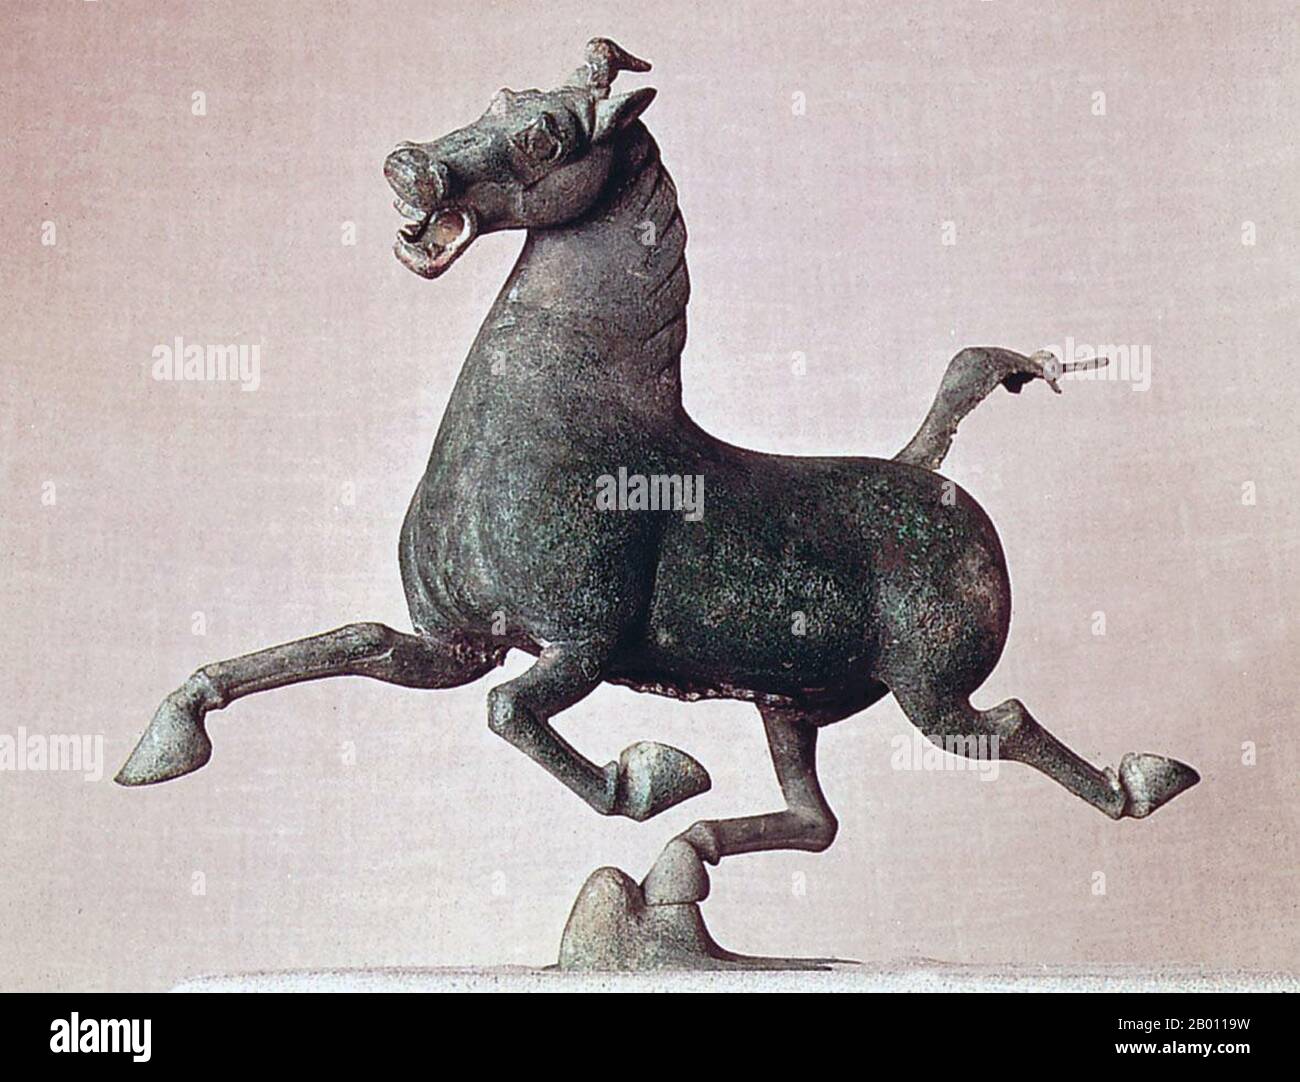 China: Das fliegende Pferd von Gansu, 2. Jahrhundert u.Z. Das fliegende Pferd von Gansu, auch bekannt als das bronzene Laufpferd oder das galoppierende Pferd, das auf einer fliegenden Schwalbe tritt, ist eine Bronzeskulptur aus dem Grab von General Zhang, Leitai, Landkreis Wuwei, Provinz Gansu, 2. Jahrhundert u.Z. Östliche Han-Dynastie. Stockfoto